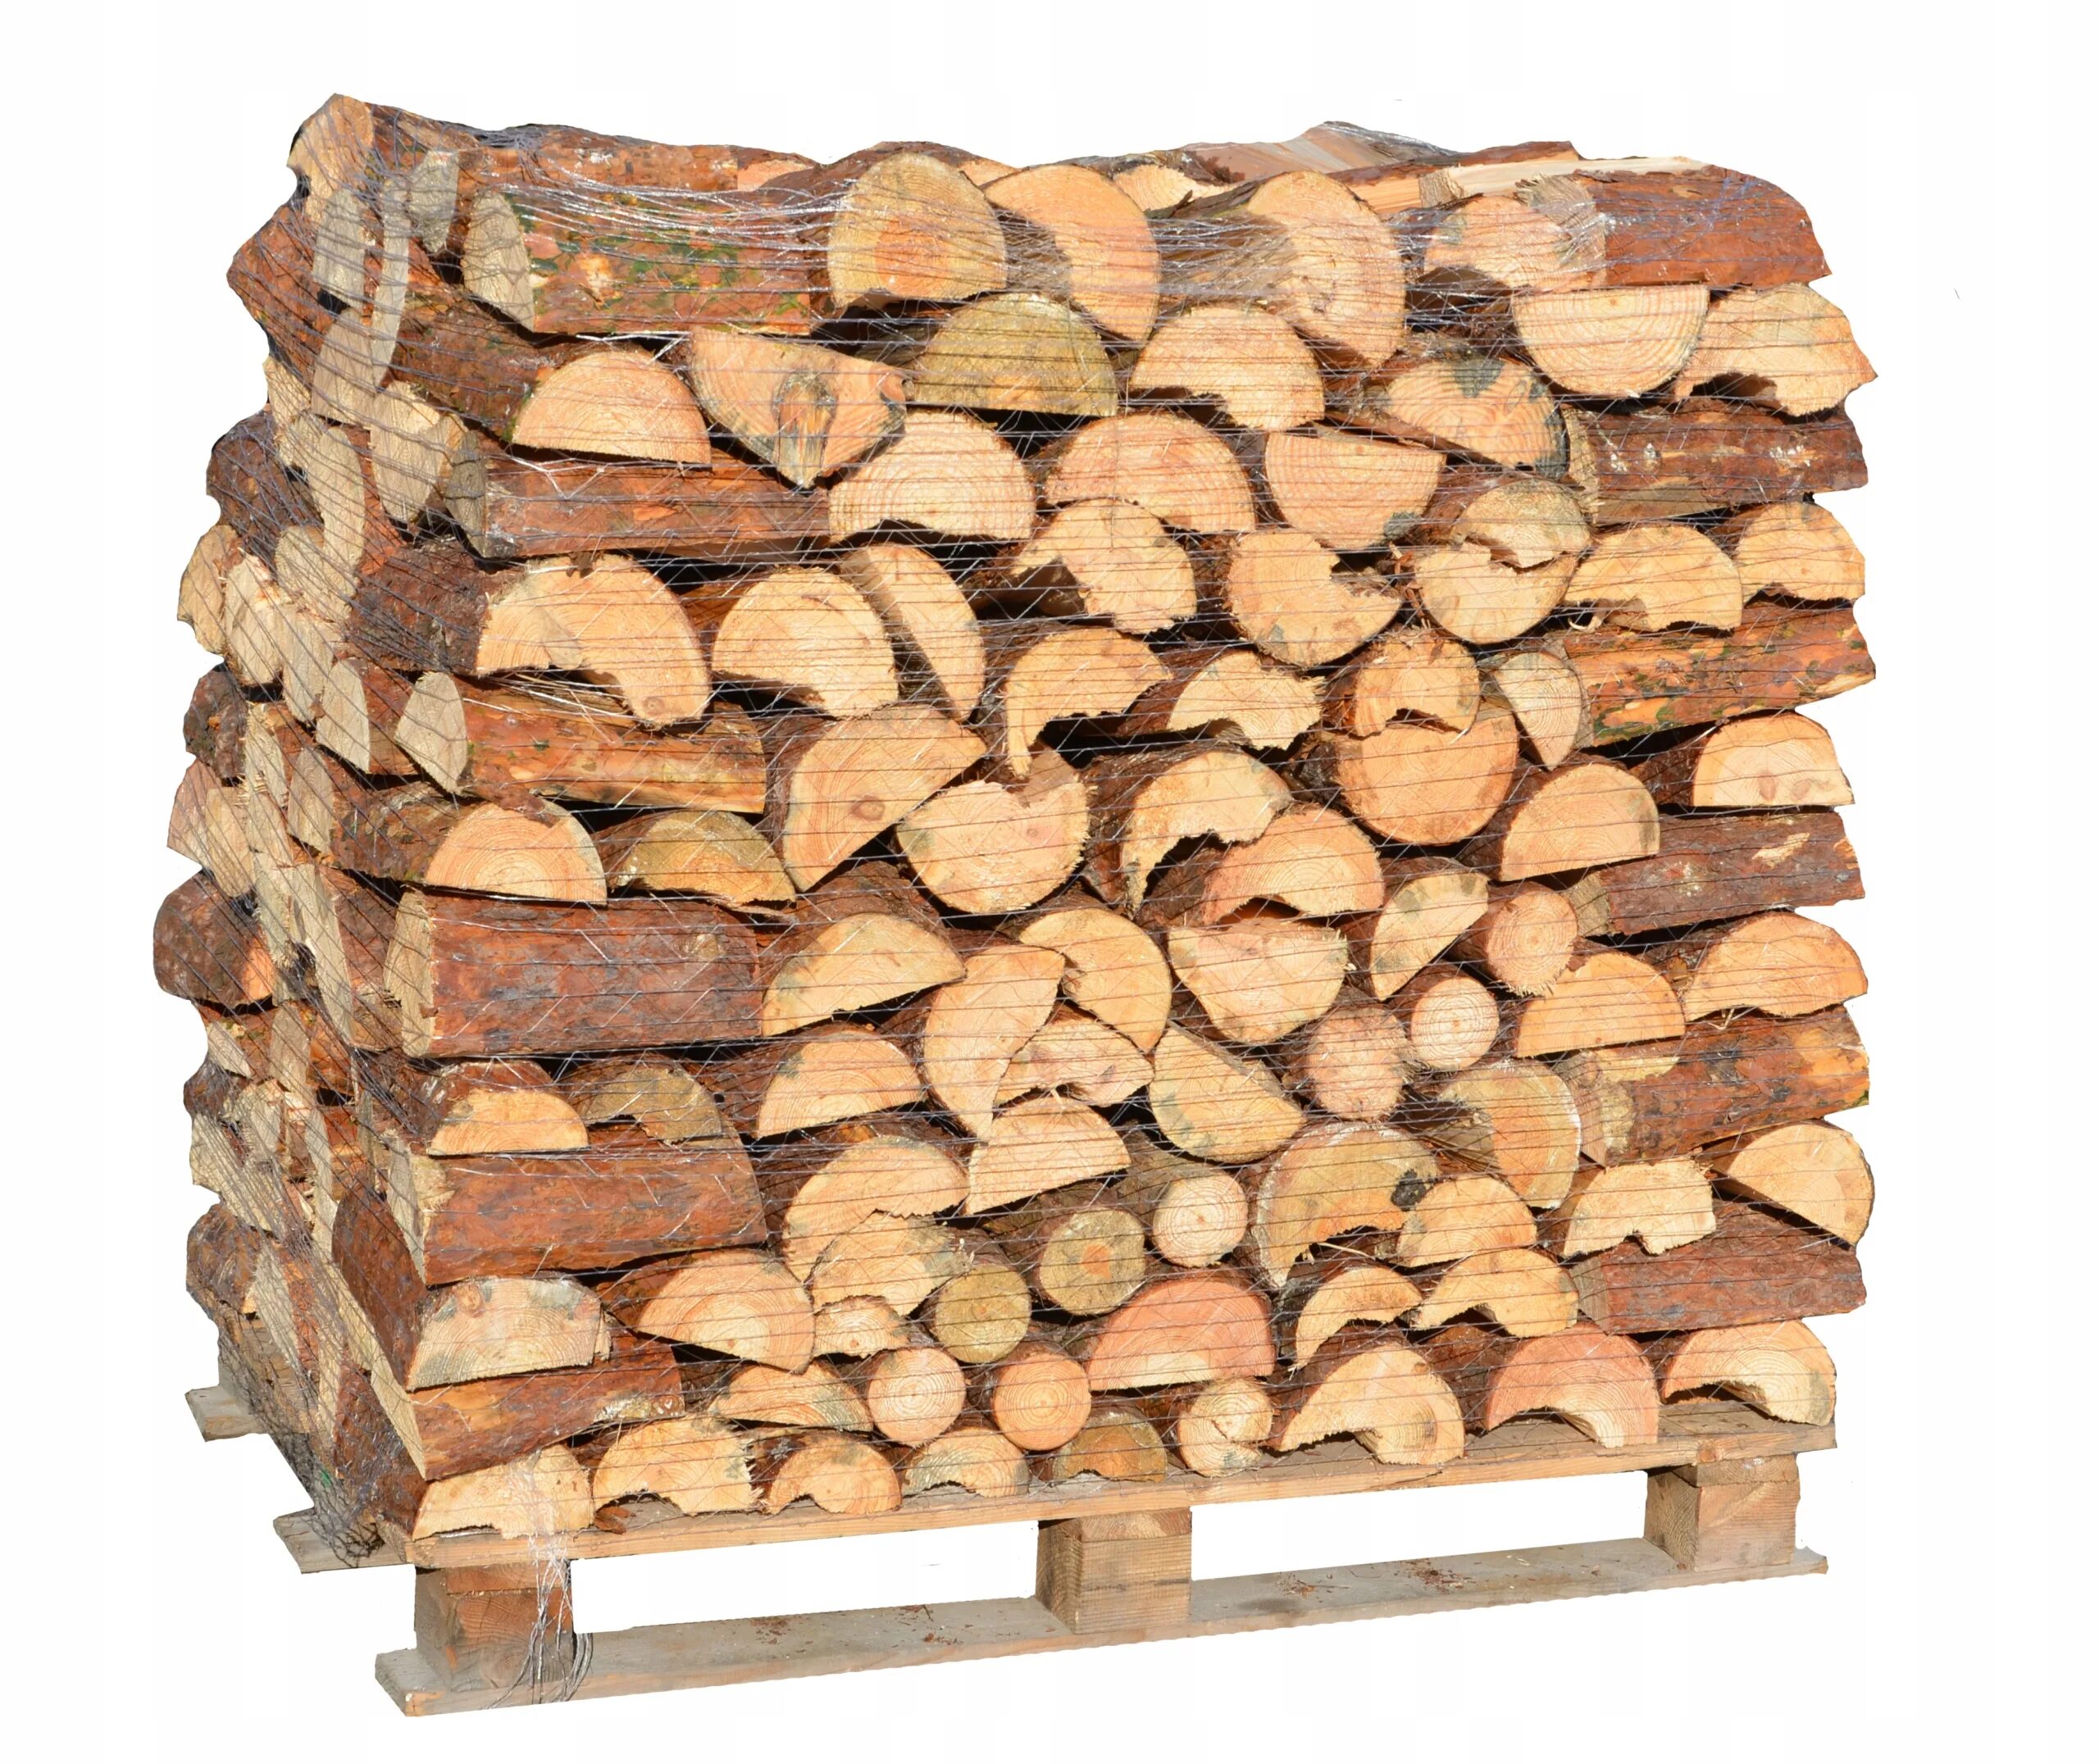 Grillkoff дрова берёзовые, 0.015 м³. Печь на дровах. Сосна колотая дрова. Дрова еловые. Купить дрова челябинская область